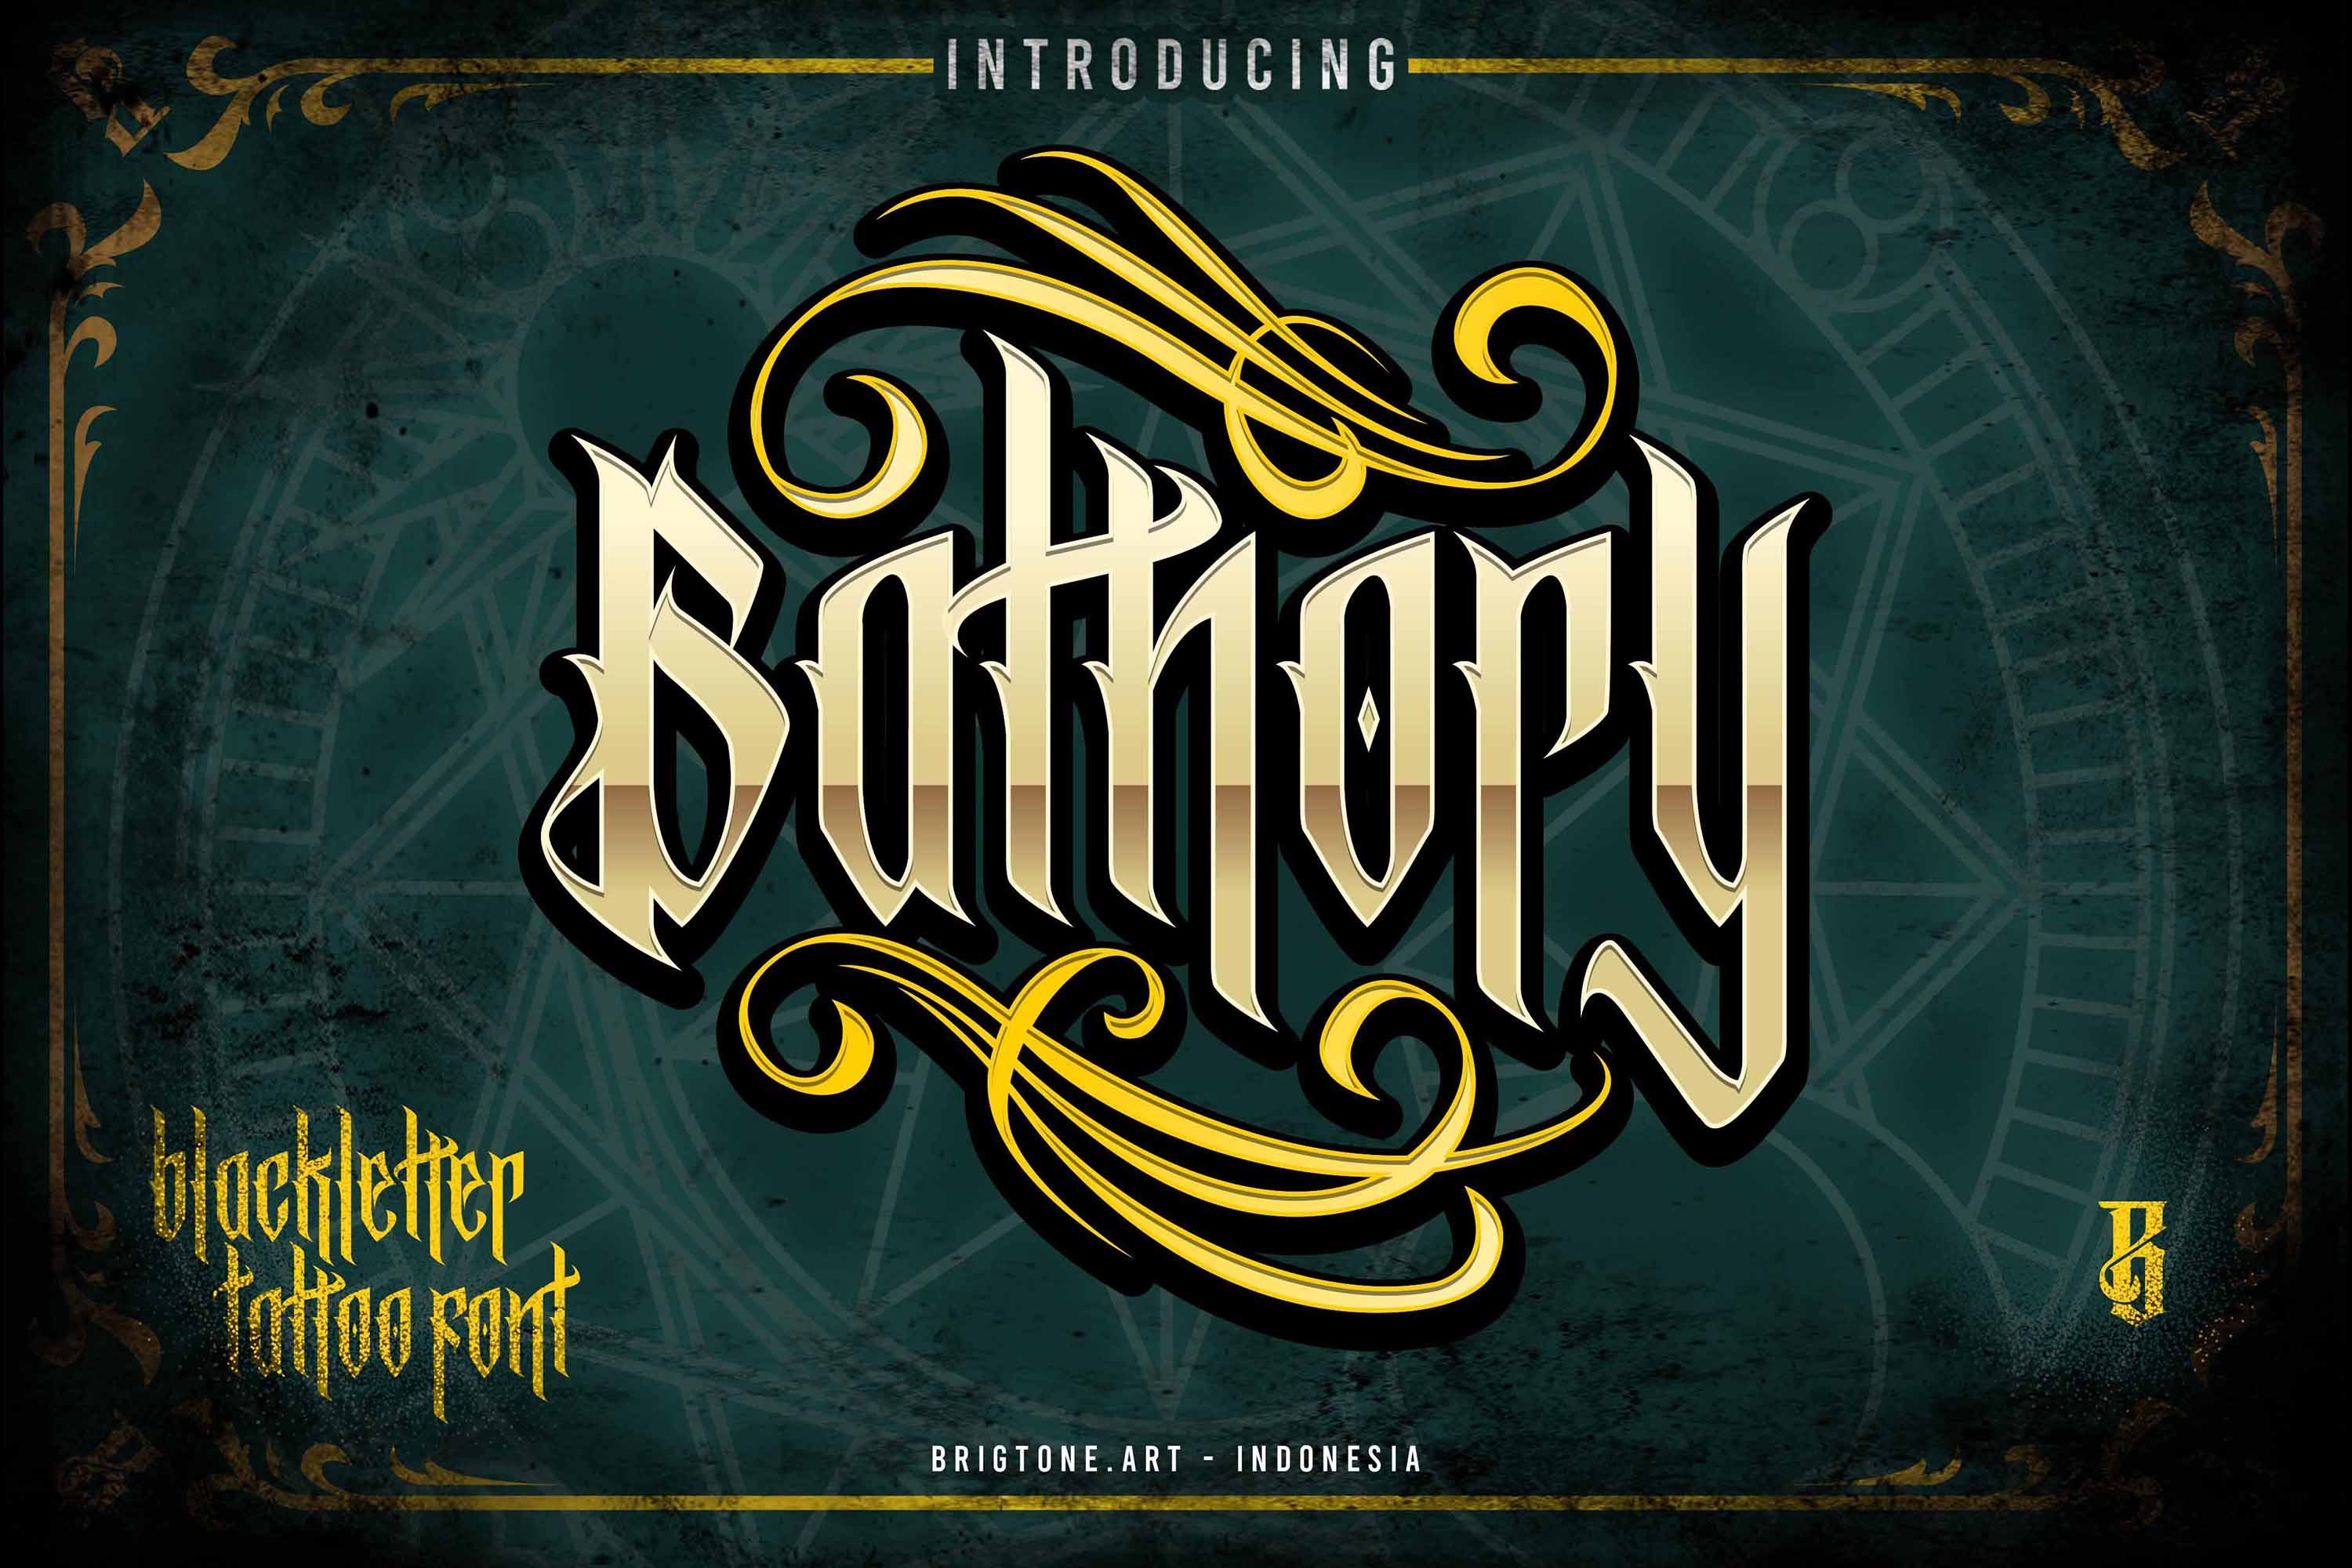 Bathory - Blackletter font cover image.